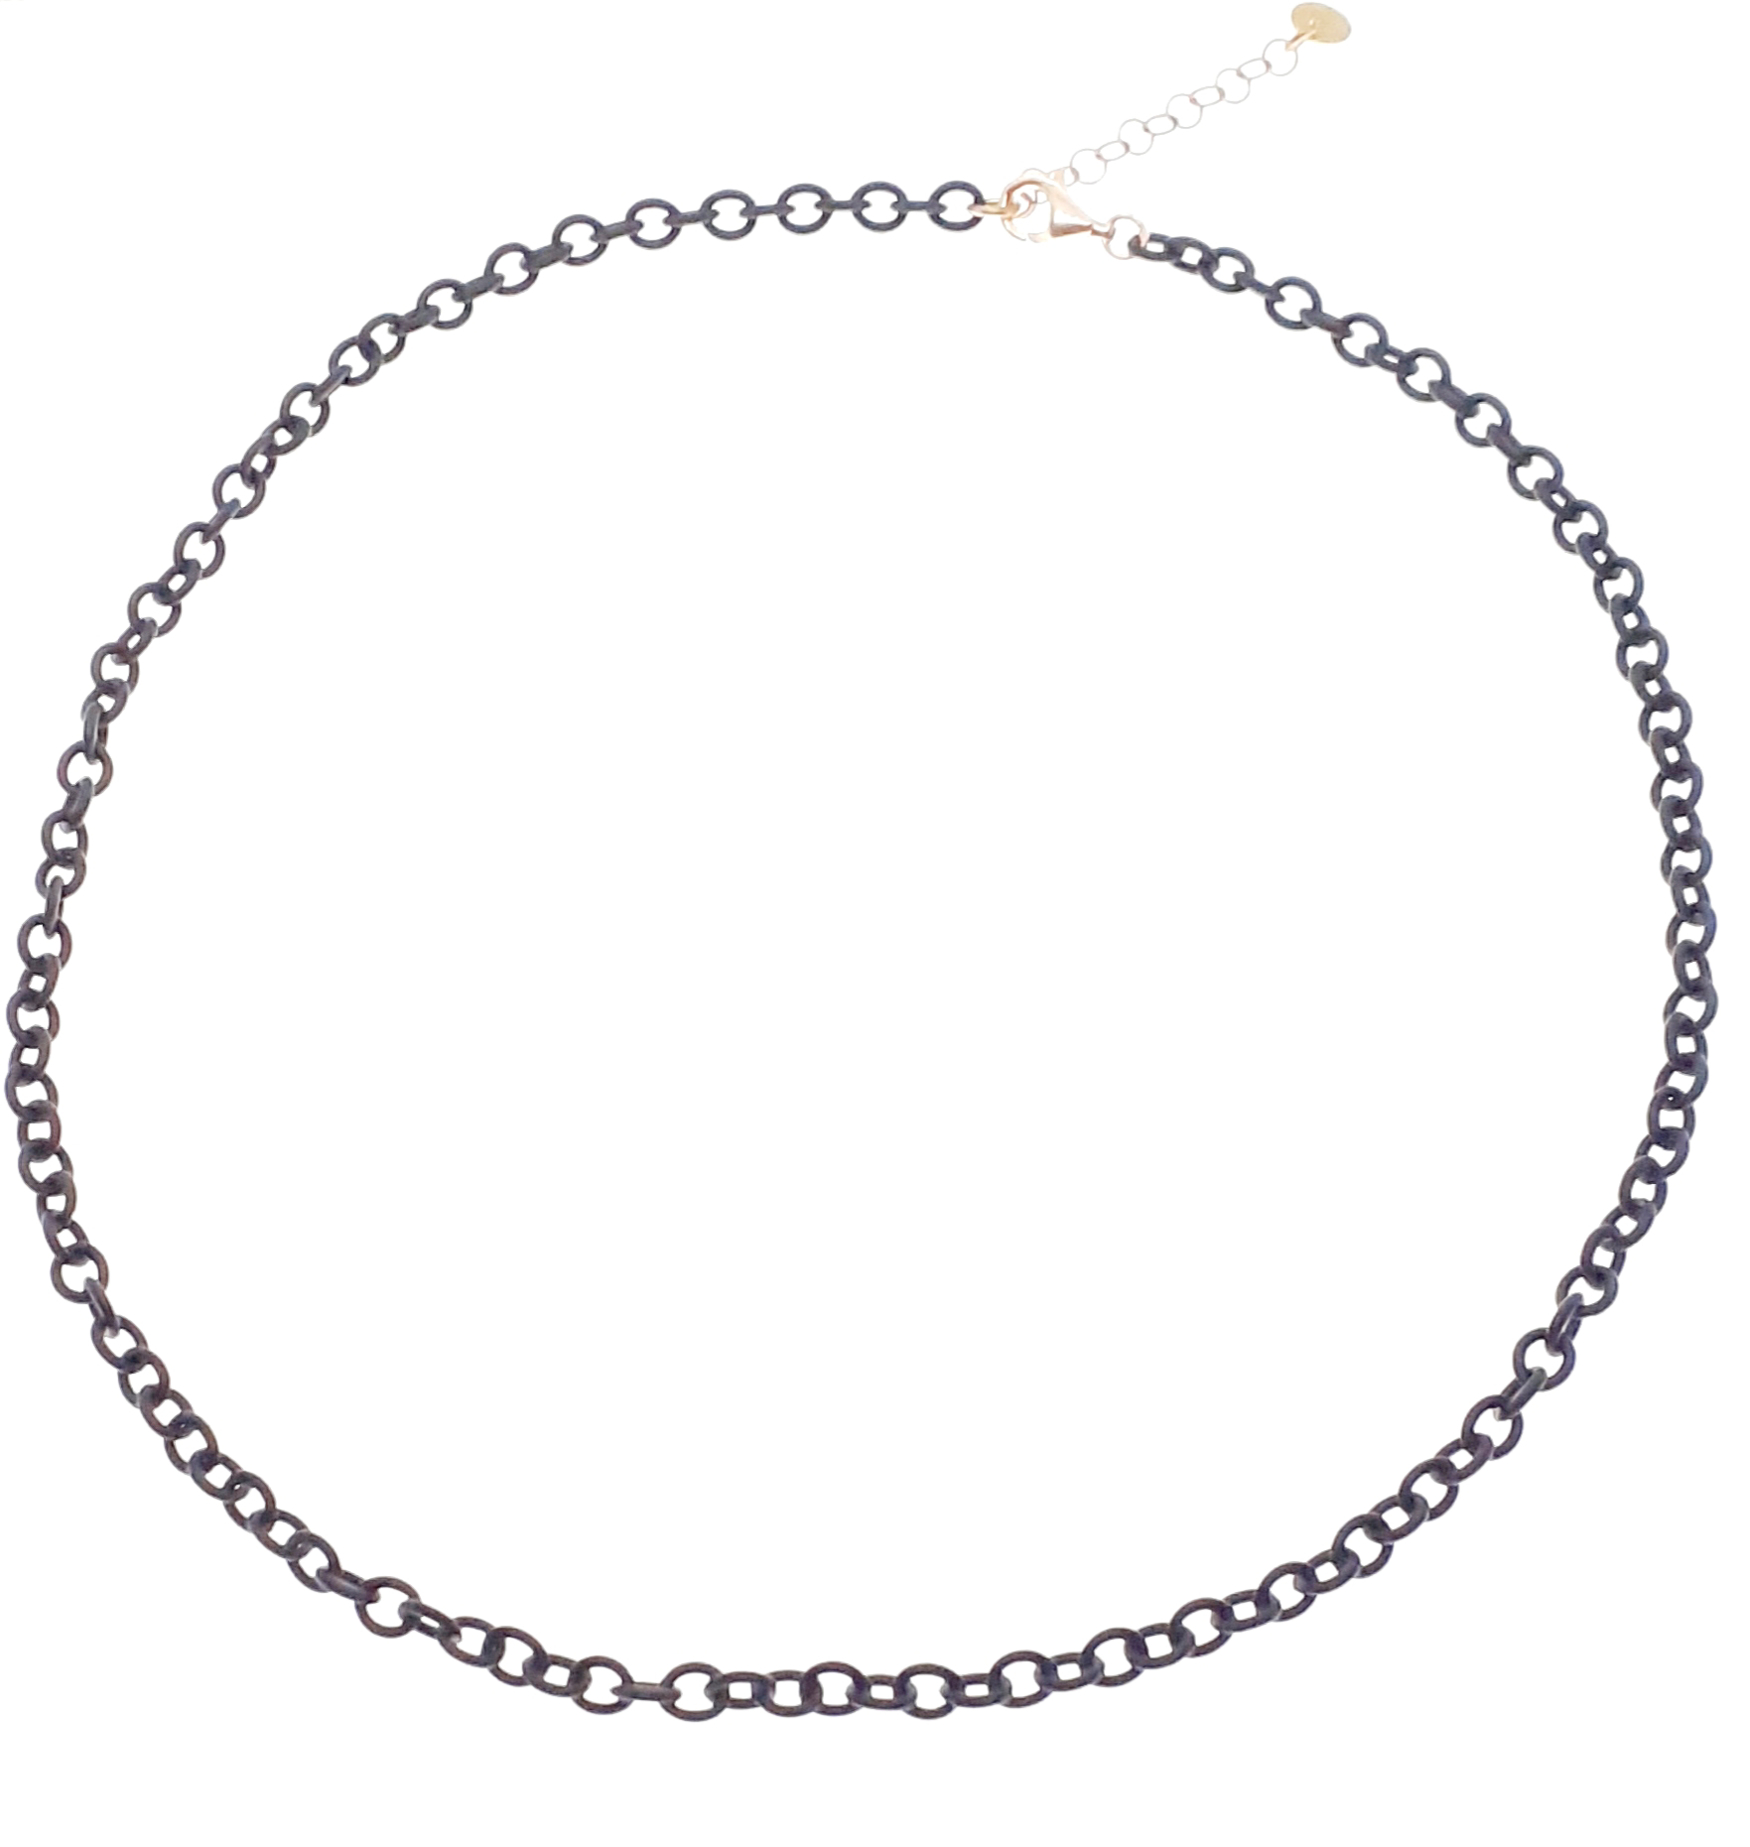 Sensi joyas alta joyería Granada plata compromiso COLLAR  PLATA RECUBIERTO  CAUCHO ( 48 cm )